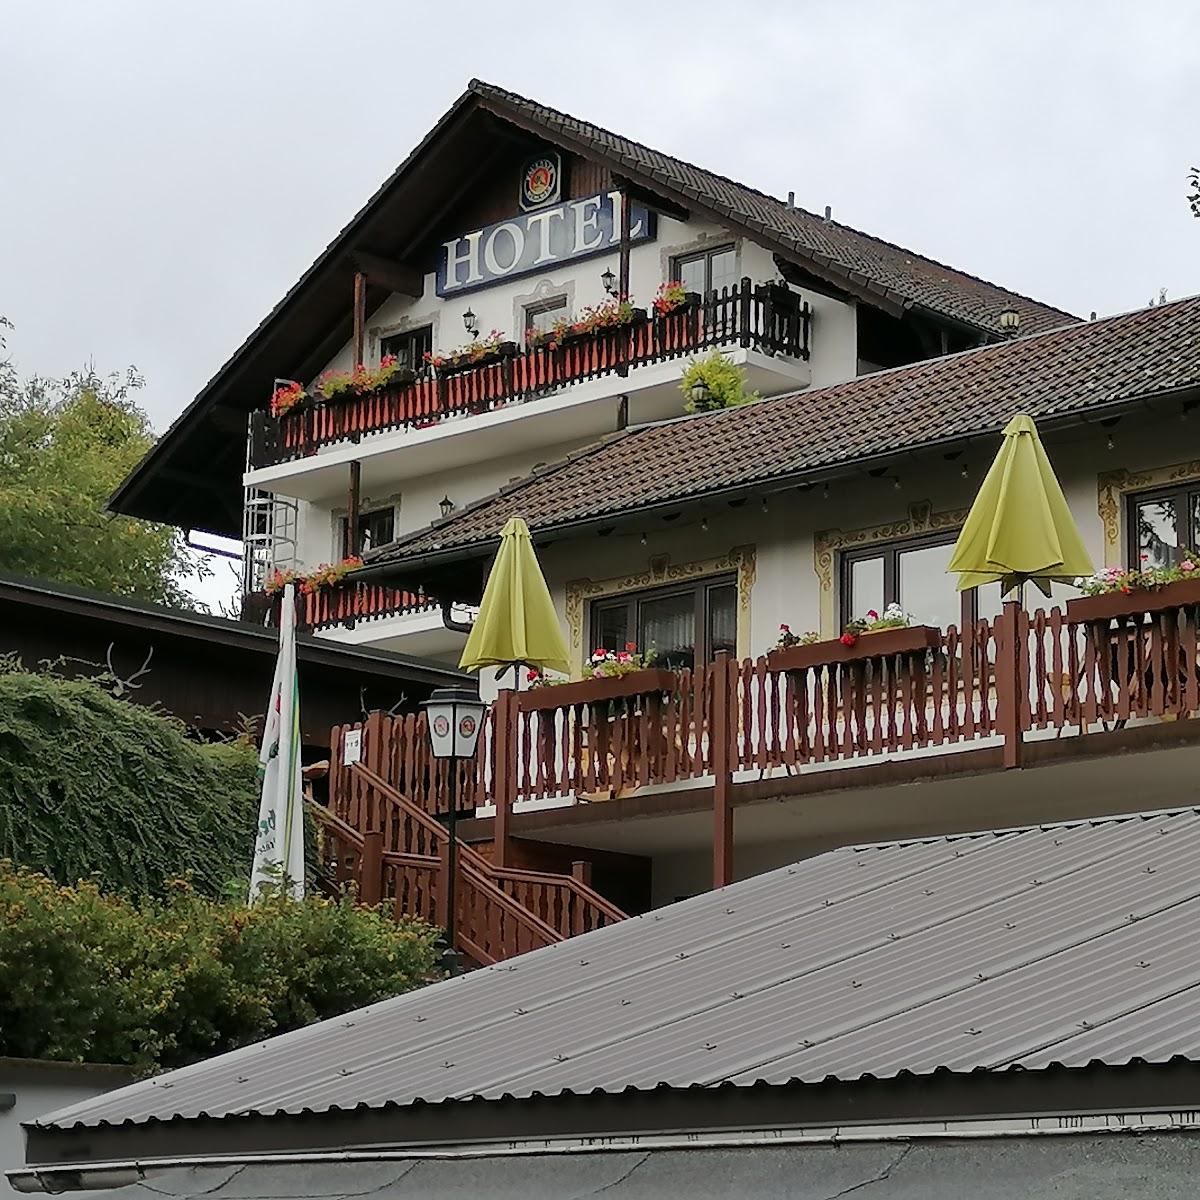 Restaurant "Hotel Jägerklause" in  Schmalkalden